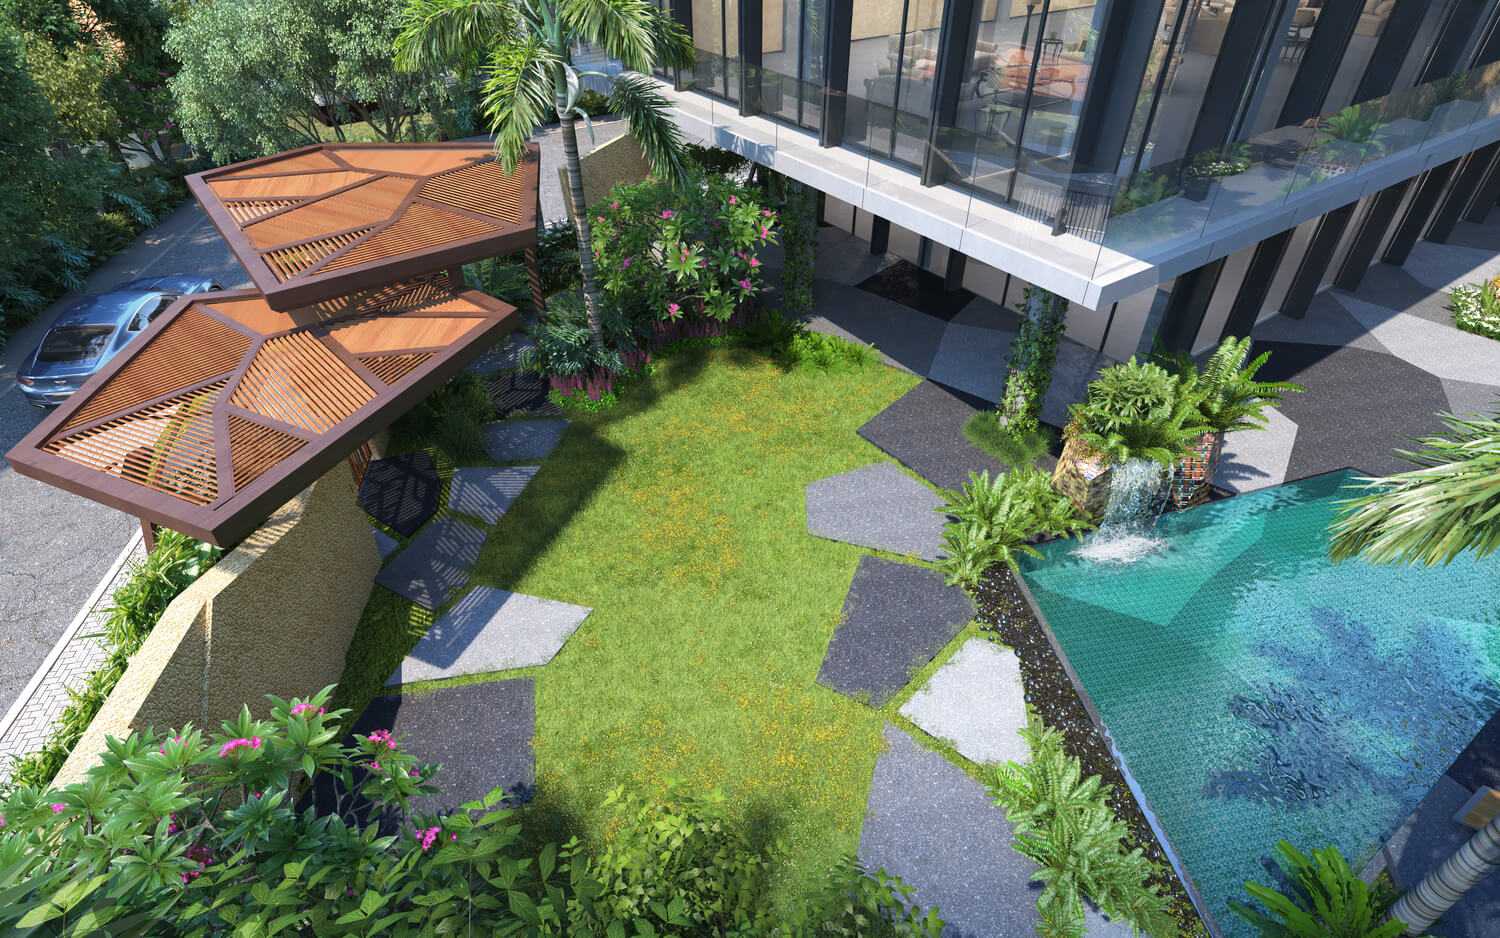 Lumiere riverside - Mở bán chính thức ngày 31/1 - Tòa nhà xanh với phong cách sống theo tiêu chuẩn Organic 0902982602 11